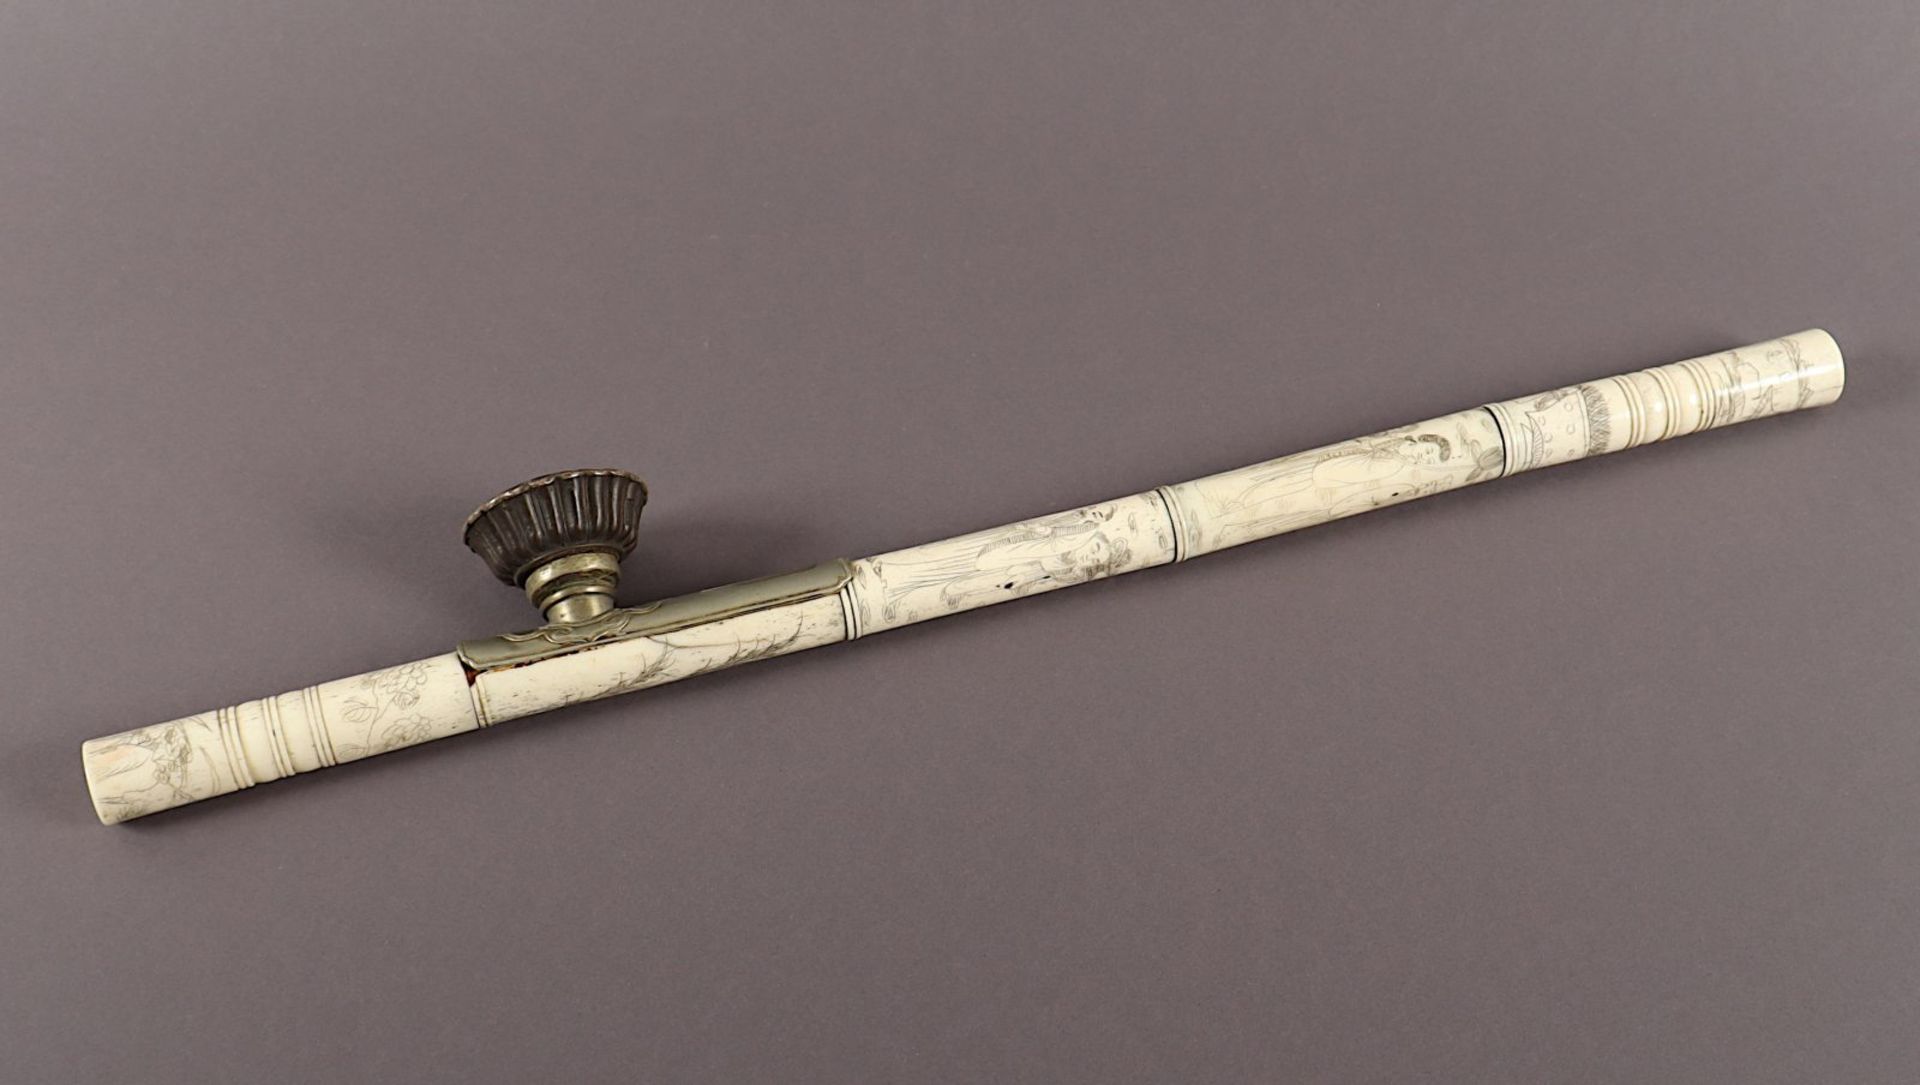 Opiumpfeife, Bein, Metall, CHINA, 19.Jh. - Bild 2 aus 3